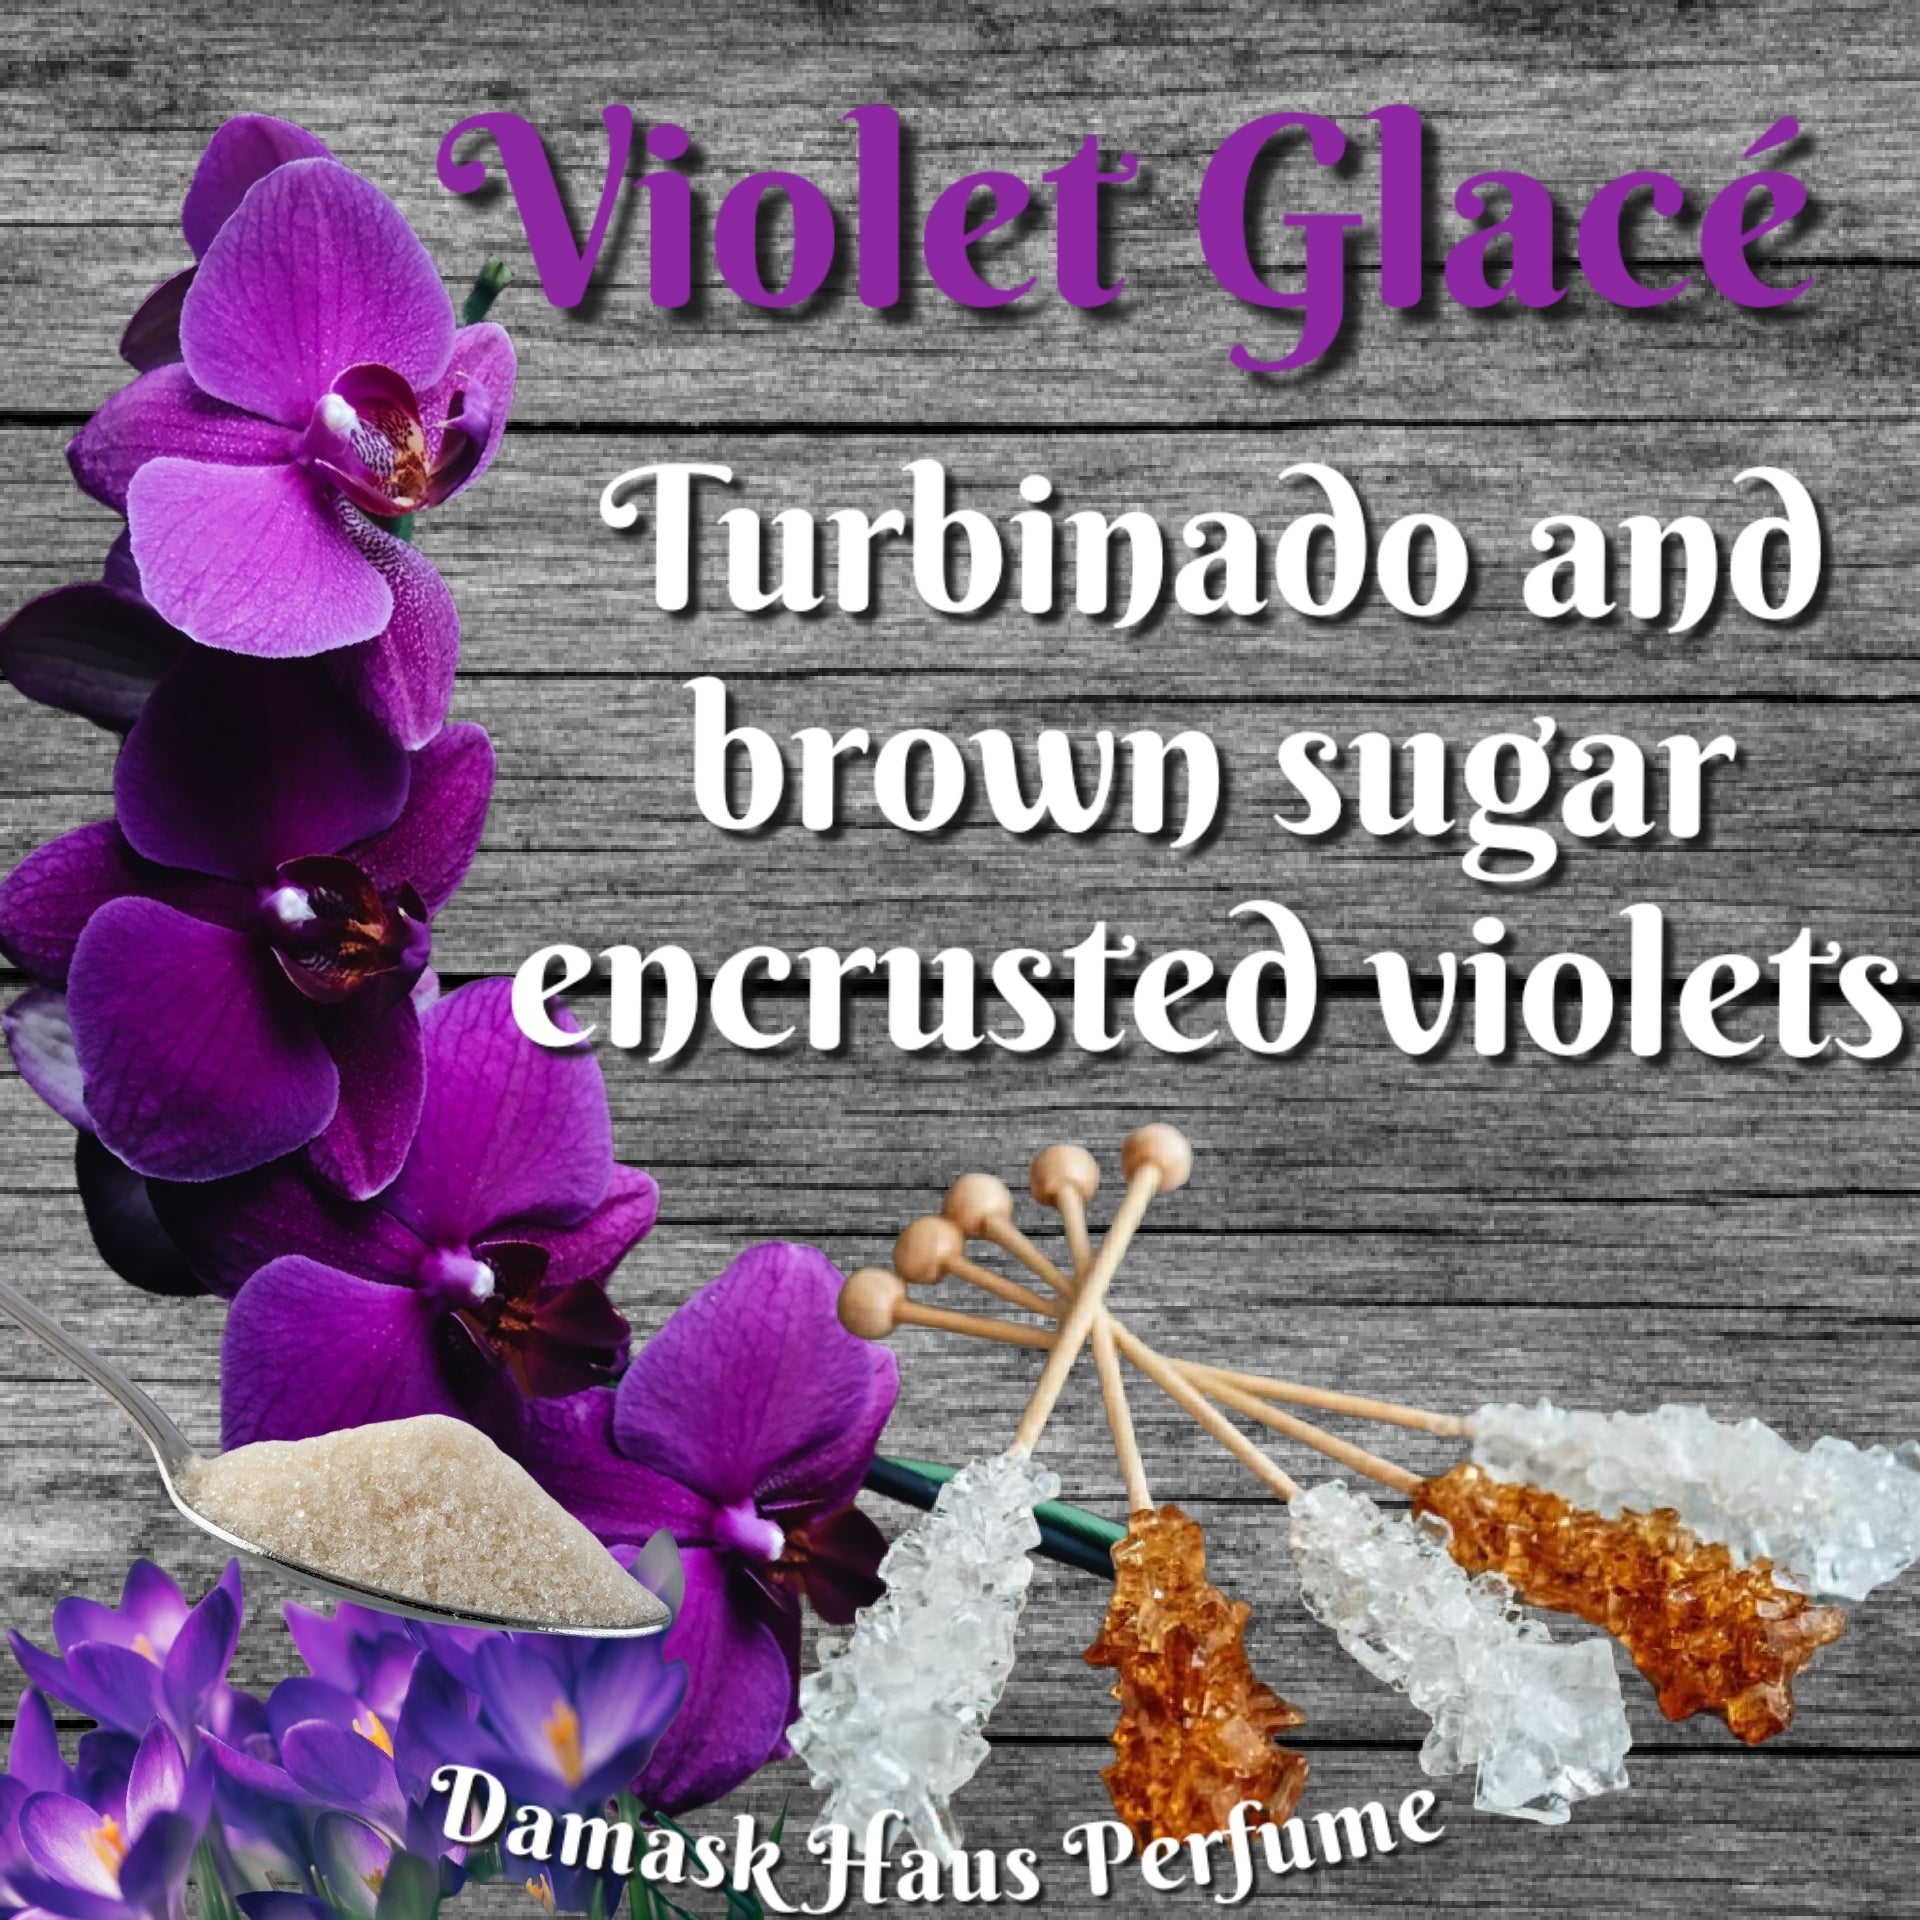 Violet Glacé